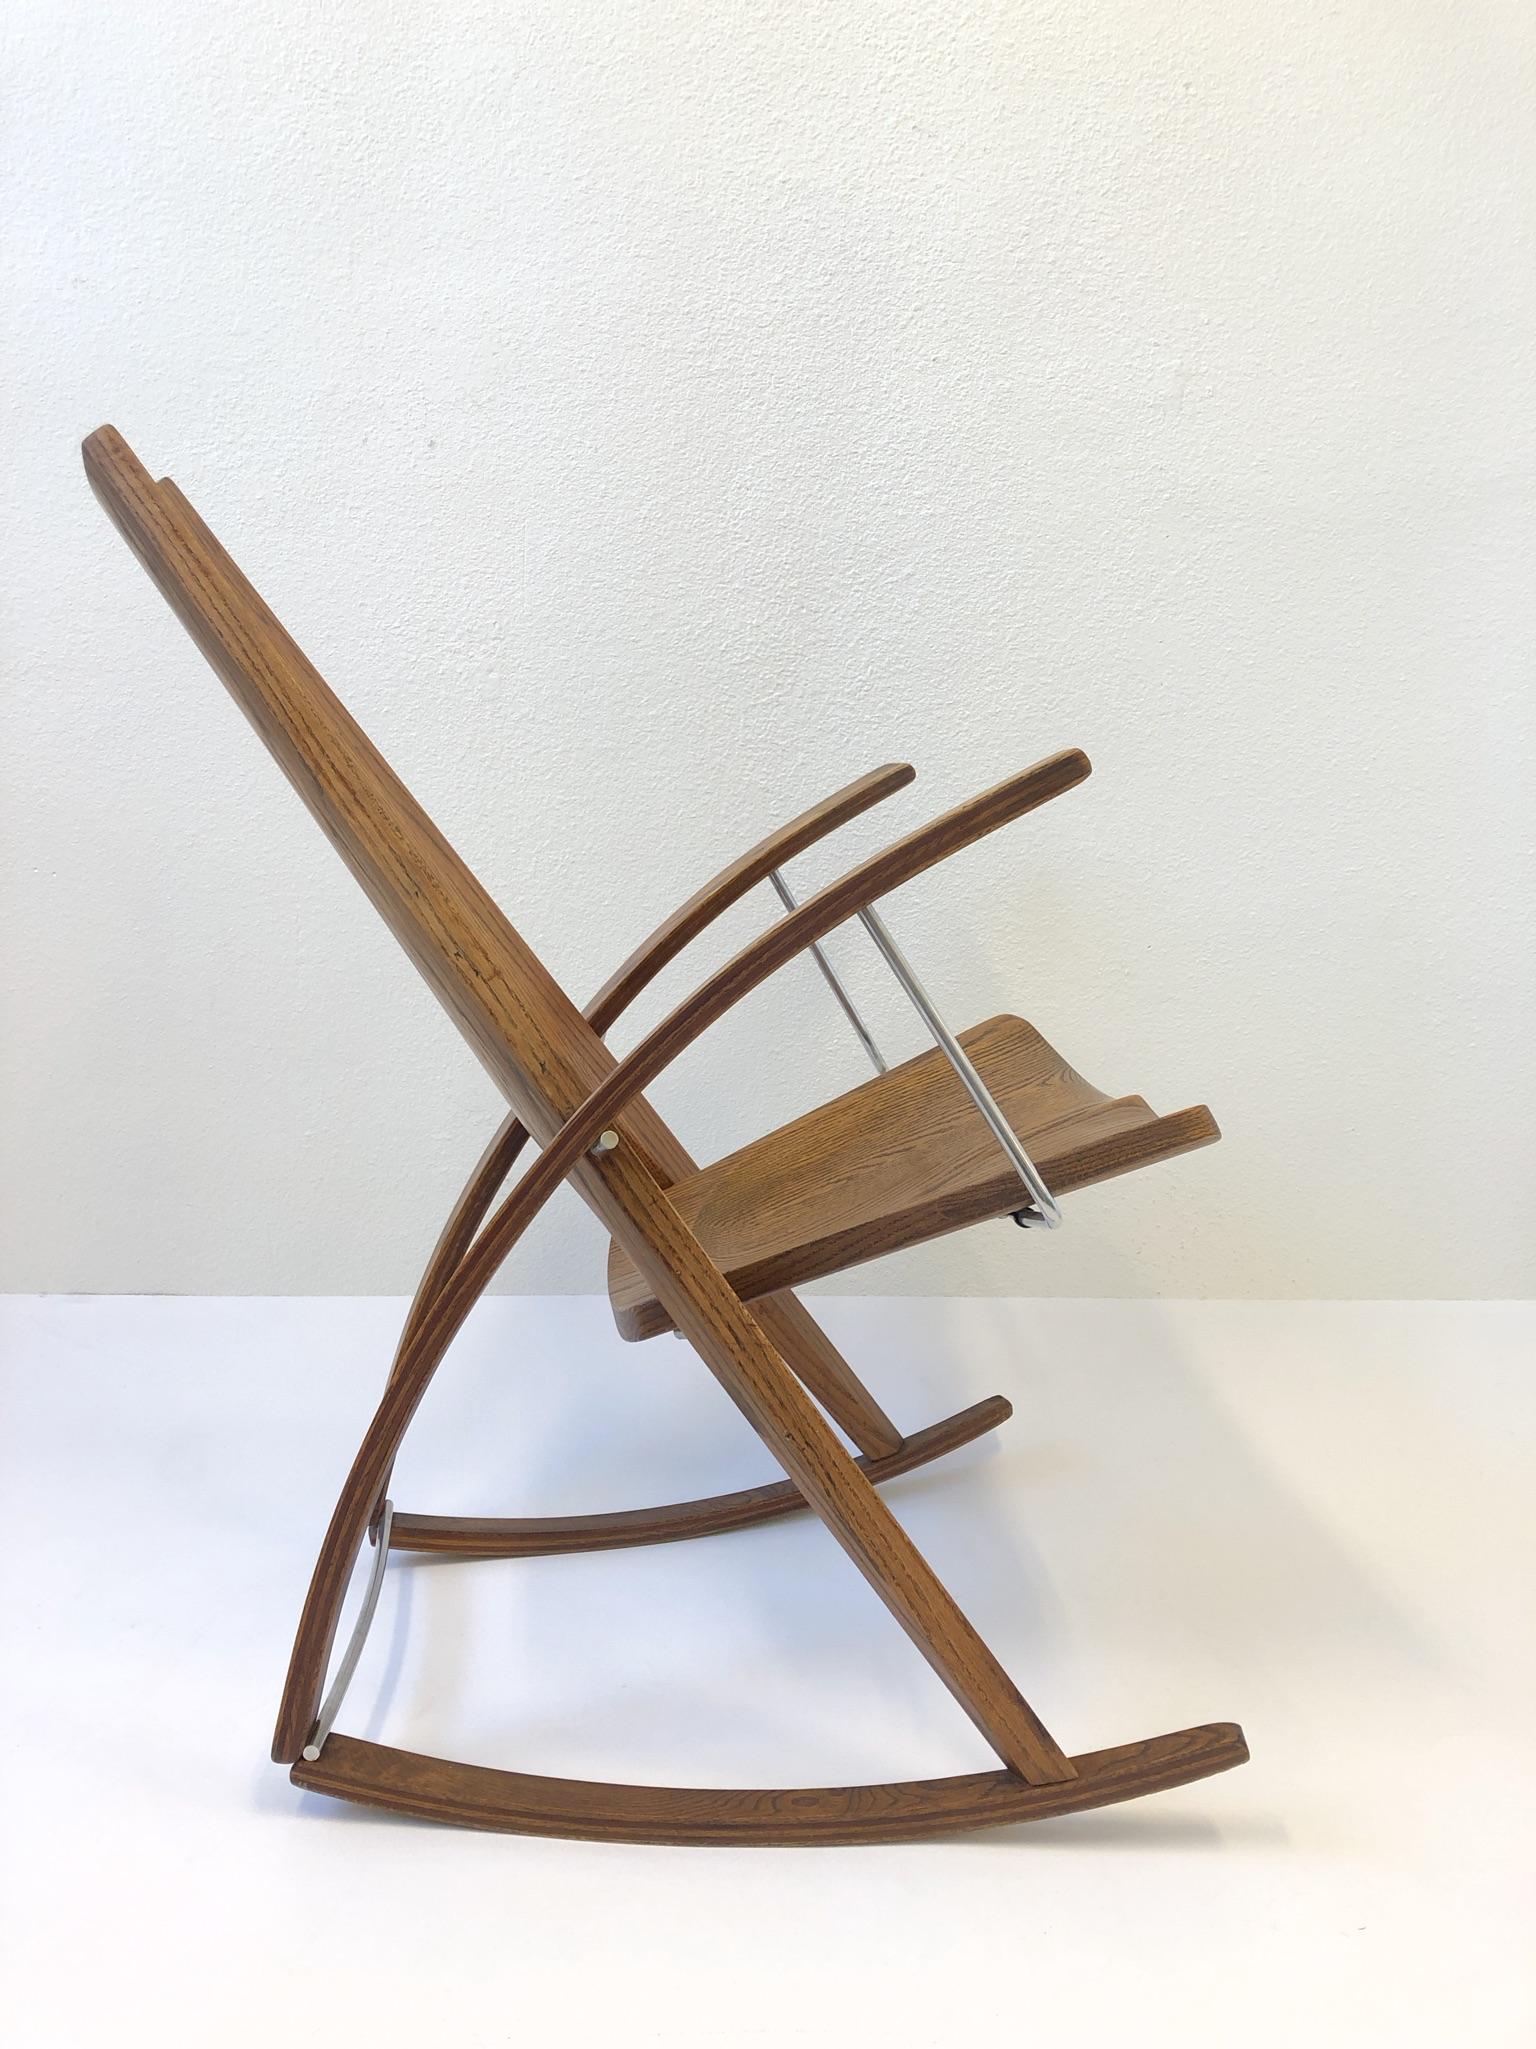 Ein erstaunlicher Schaukelstuhl aus den 1980er Jahren von Leon Mayer. Der Stuhl ist von Leon Mayer handsigniert, datiert 1980 und nummeriert 169. Der Schaukelstuhl ist aus massiver Eiche und poliertem Edelstahl gefertigt.
Gesamtabmessungen: 36